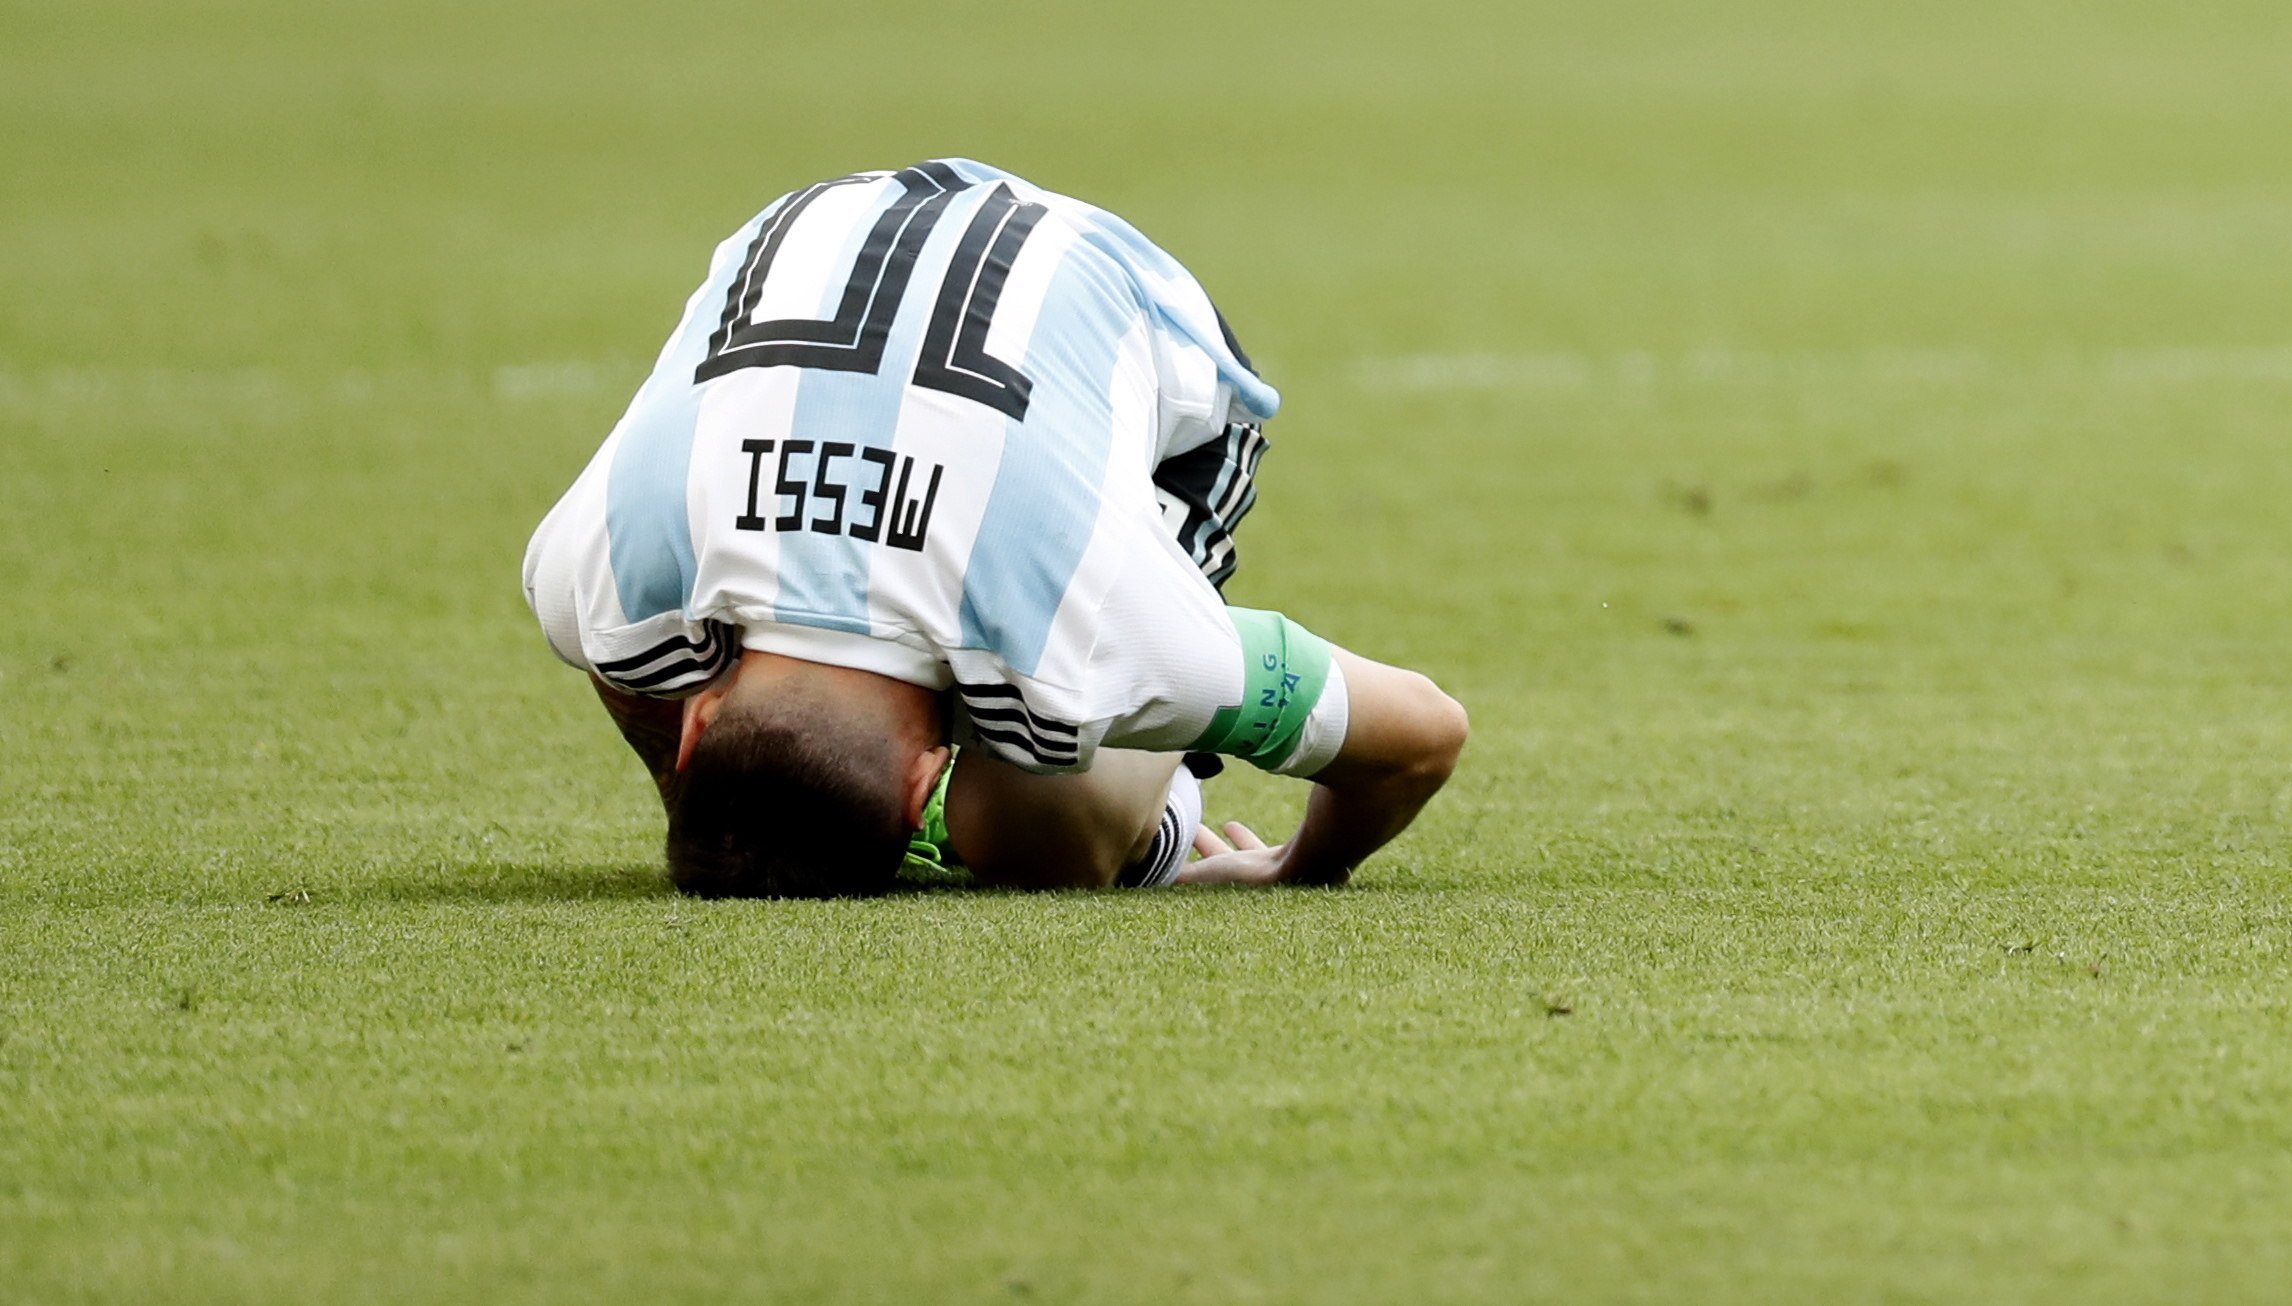 Foto: La suerte ha acompañado a Messi en una jugada